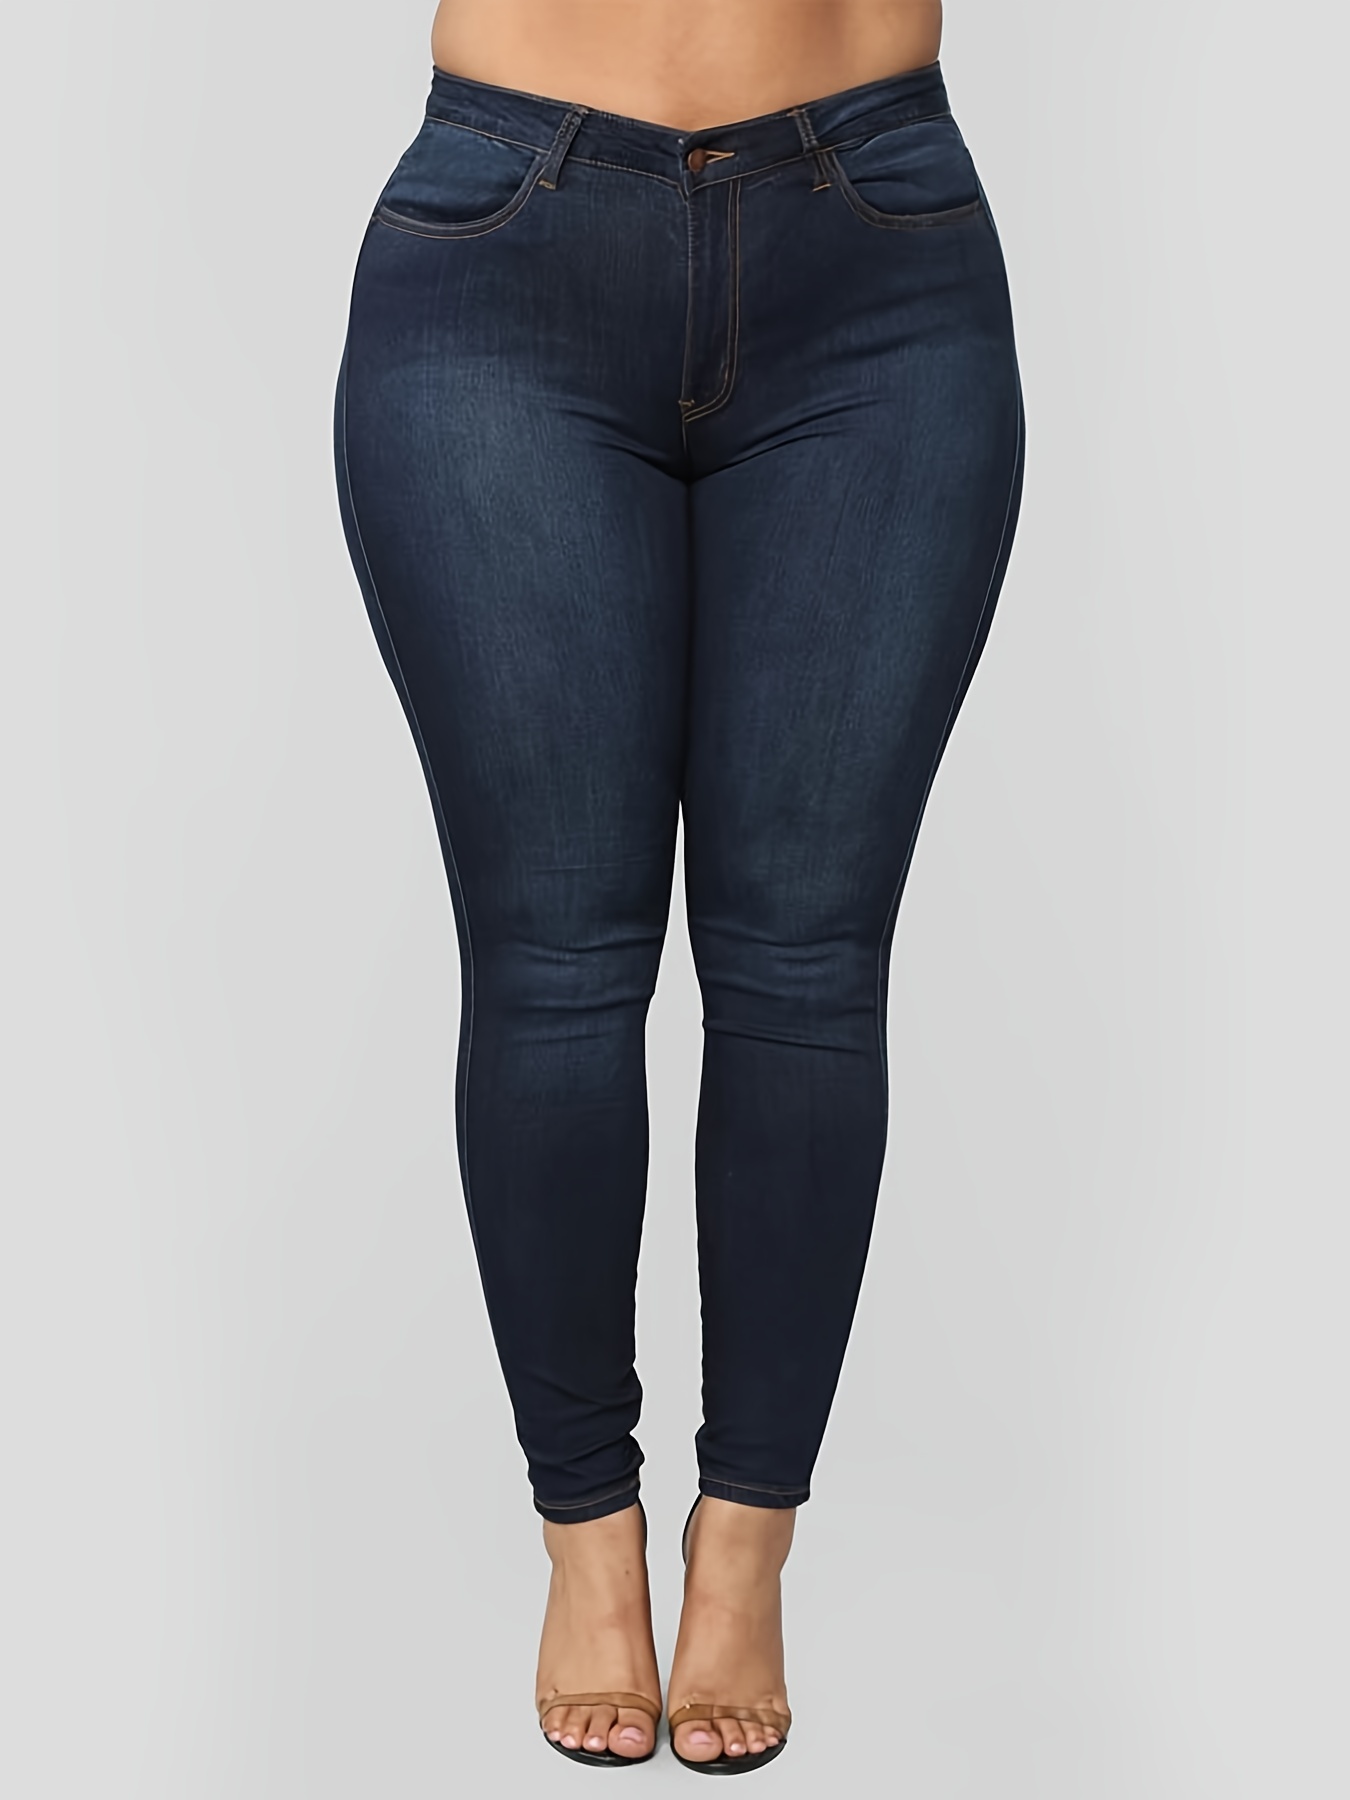 Fashion Nova Jeans Plus Size 2XL (16) Blue Nice